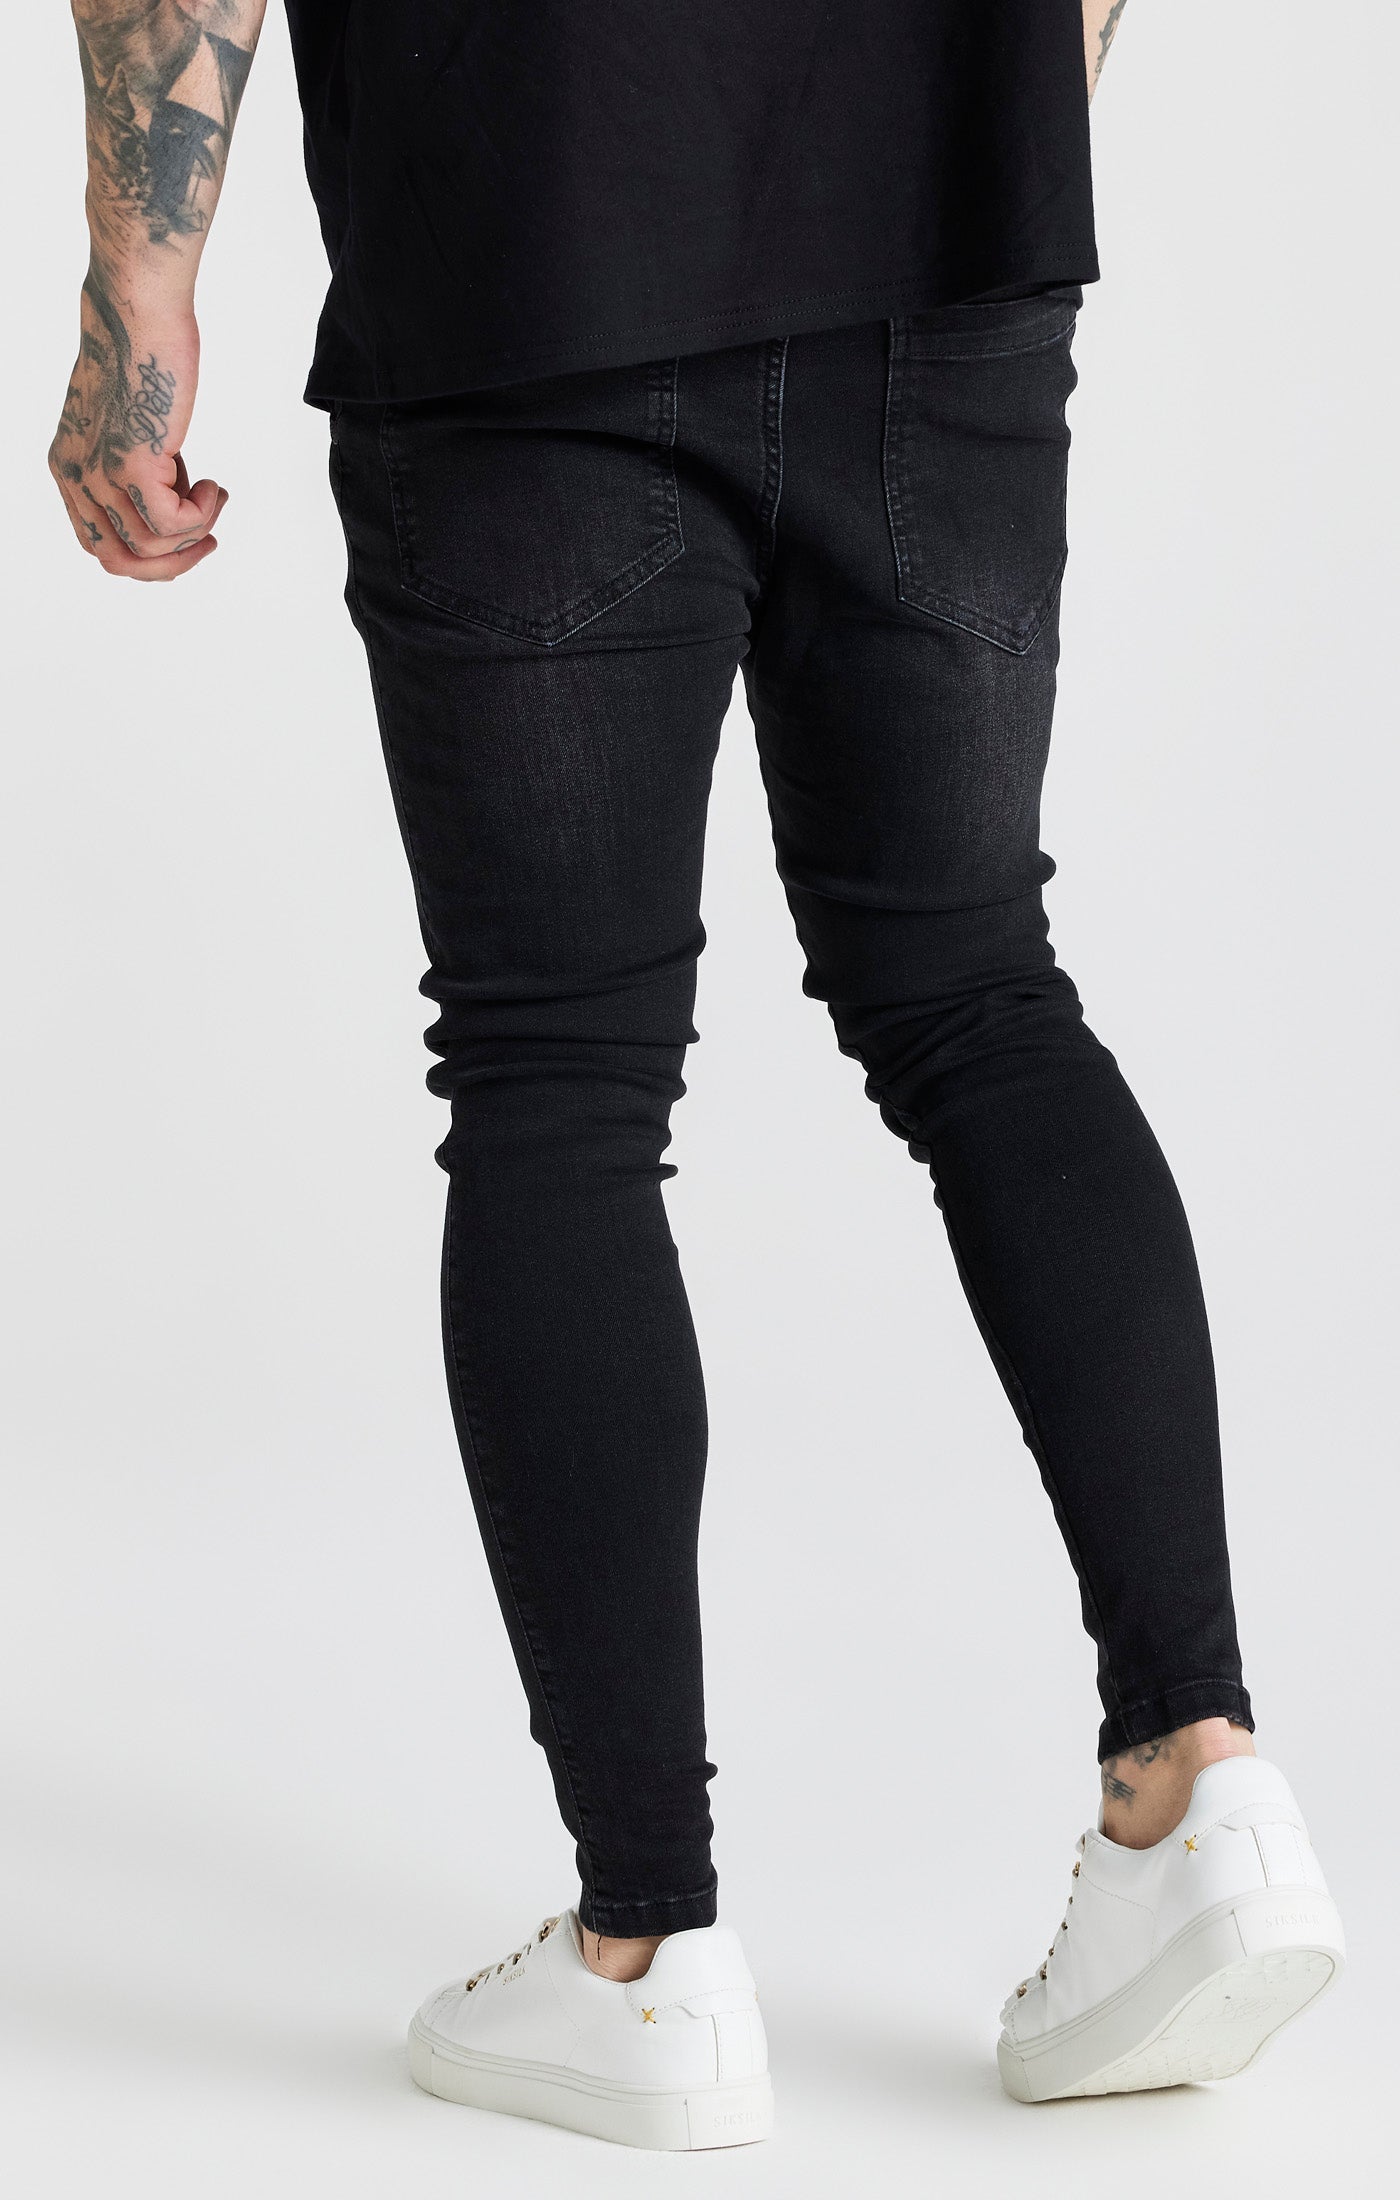 Essential Skinny Jean in Black Jeans SikSilk   